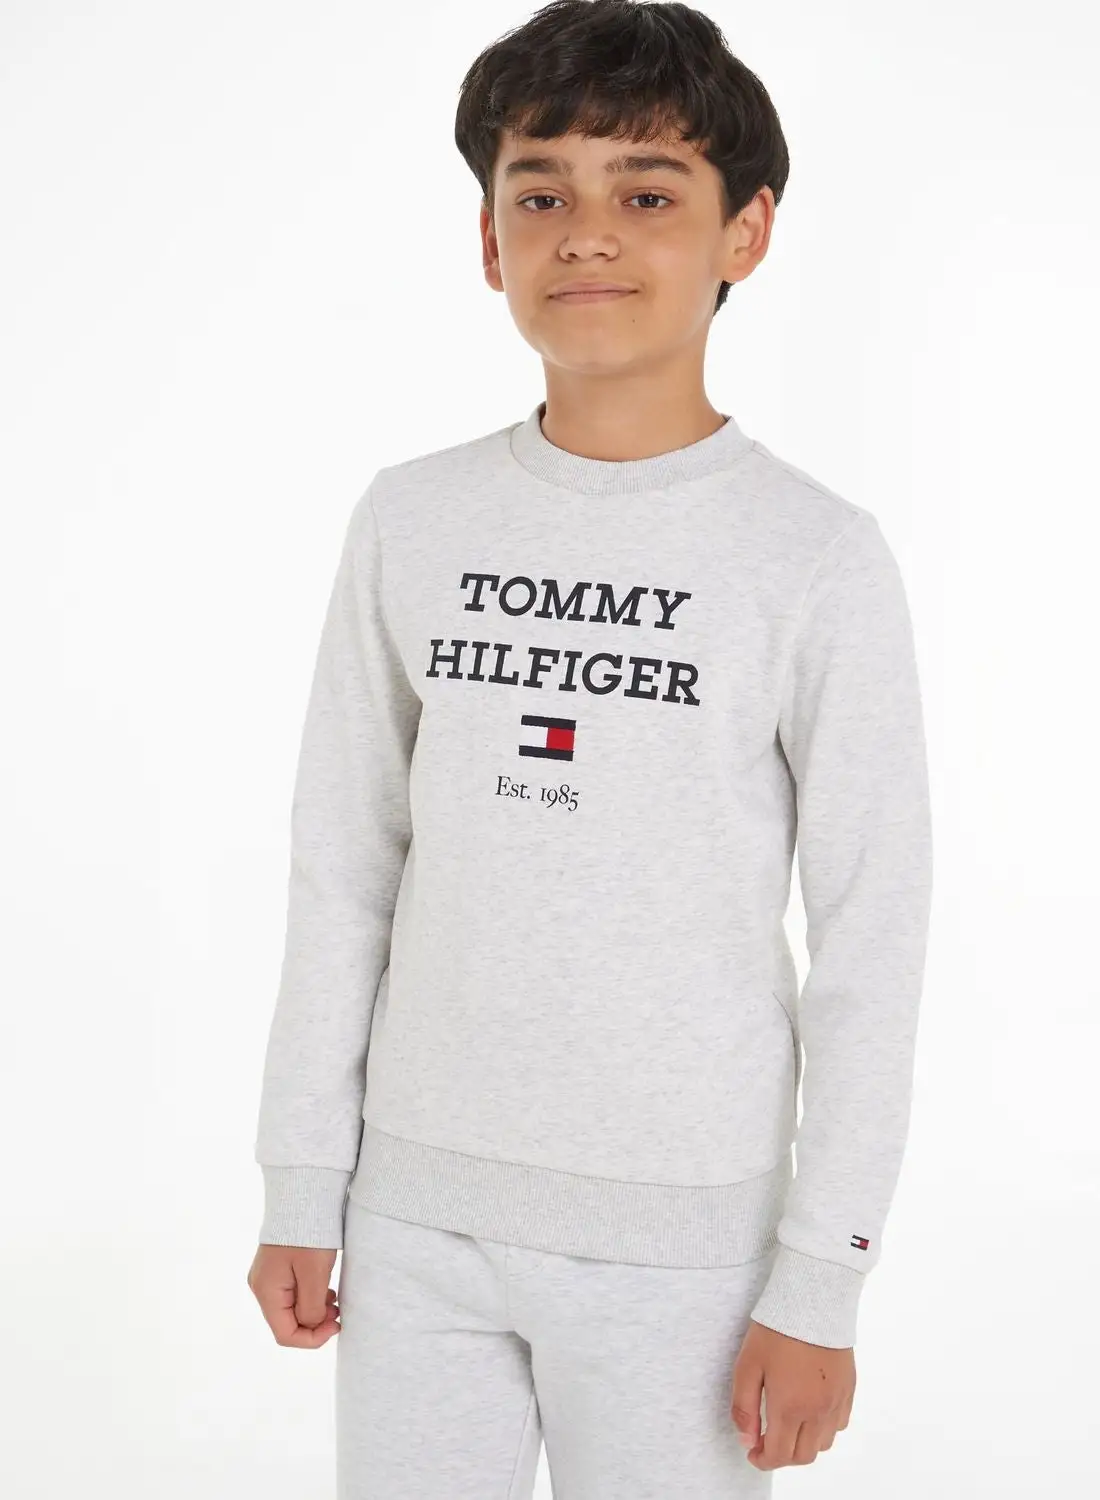 TOMMY HILFIGER Youth Logo Sweatshirt